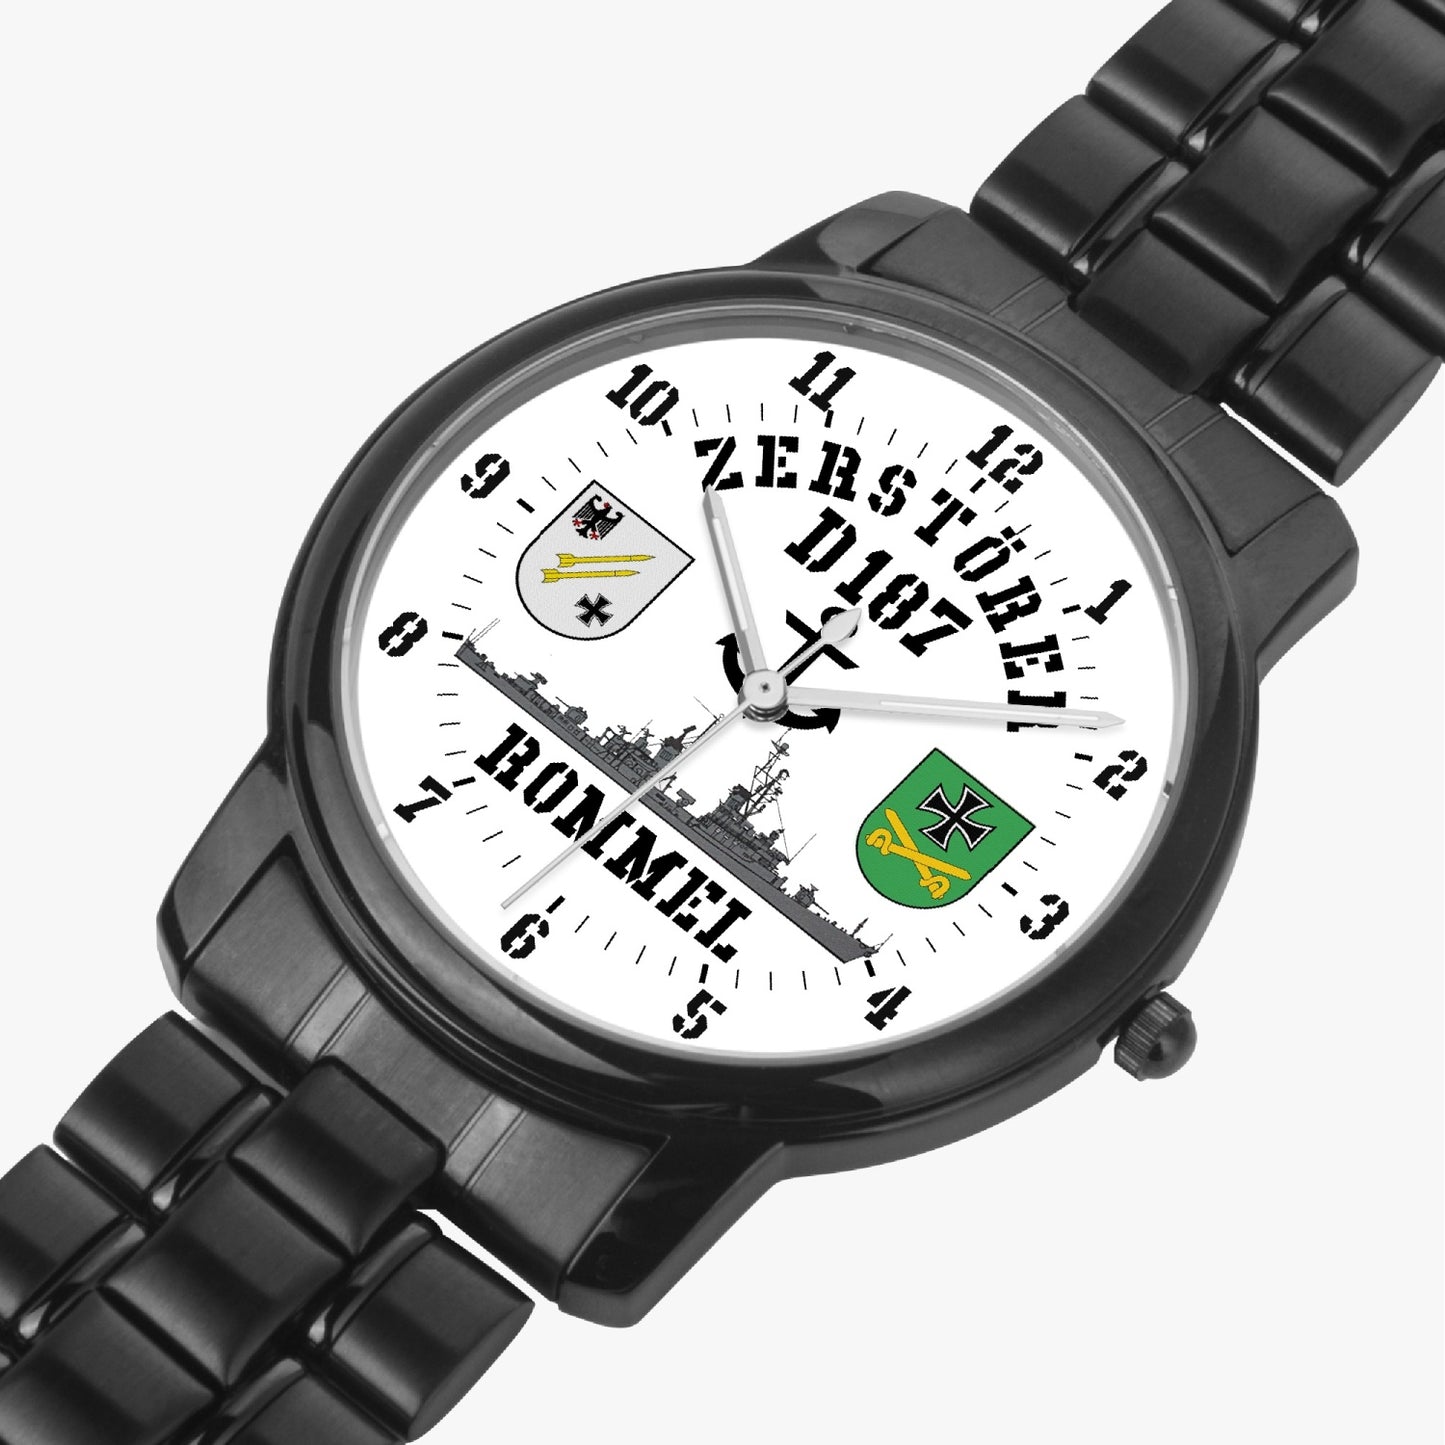 Armbanduhr Zerstörer D187 ROMMEL - Batterie